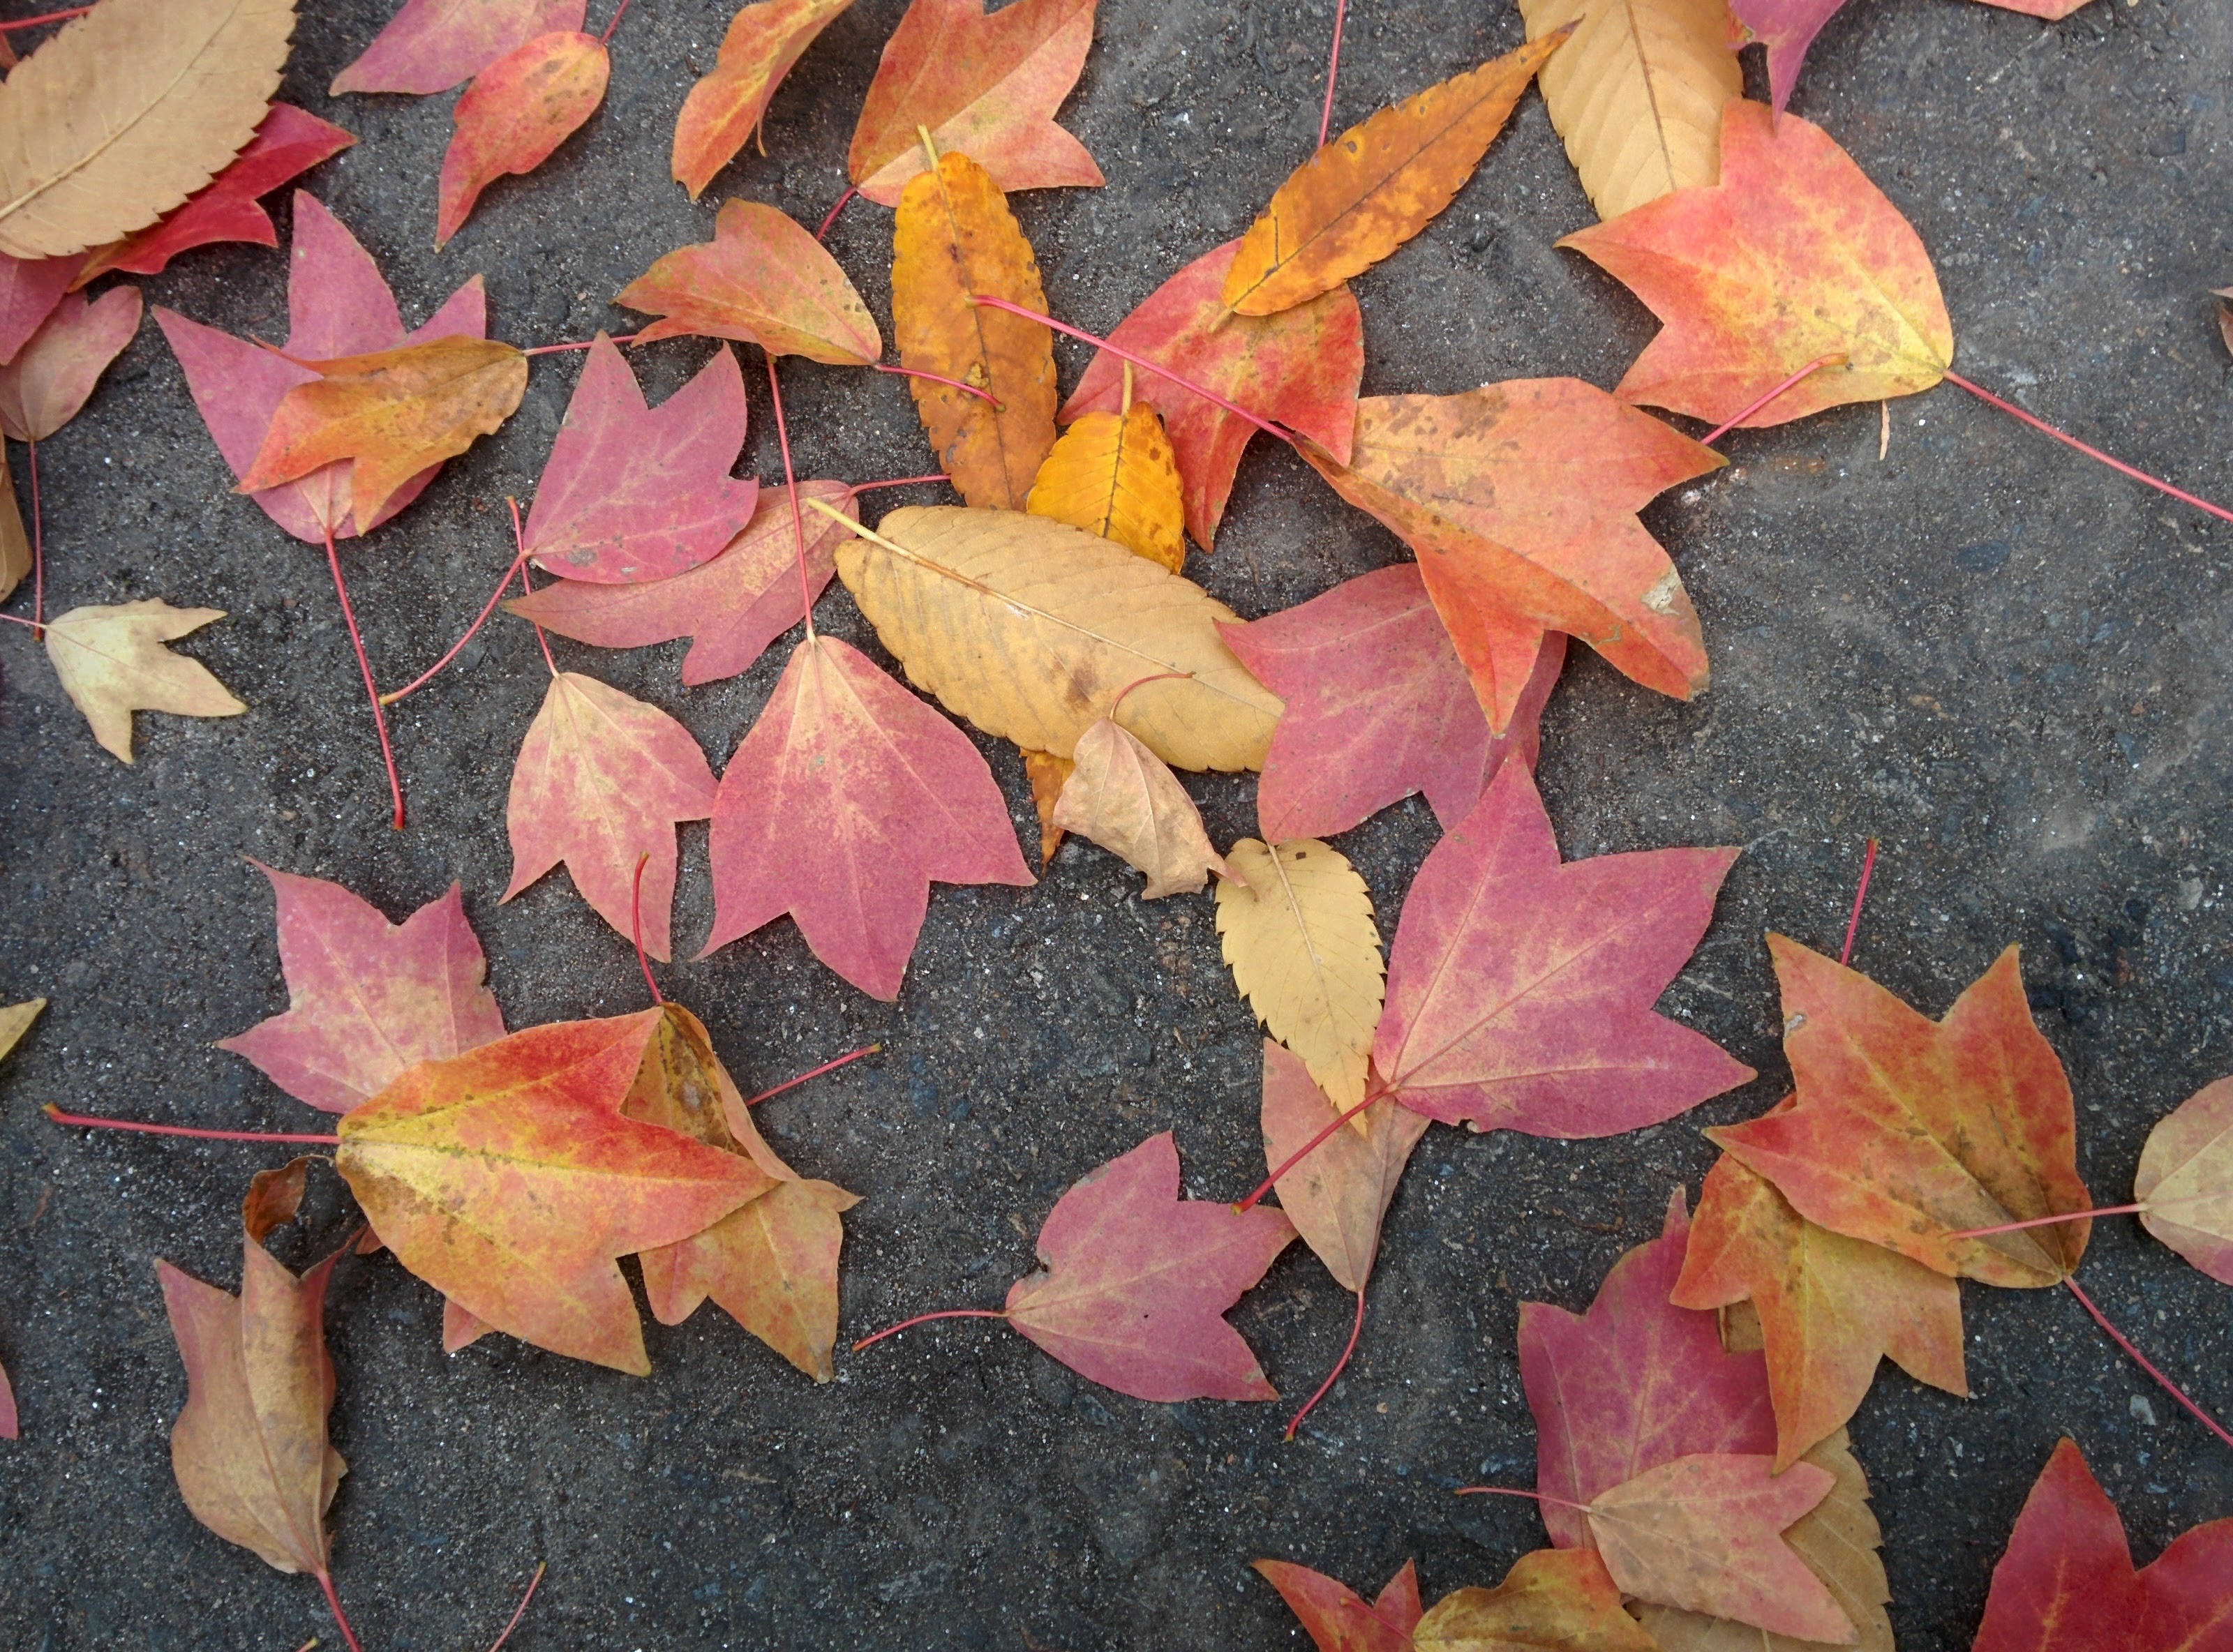 IMG_20151112_085717.jpg 단풍 낙엽... 중국단풍나무, 느티나무 단풍잎